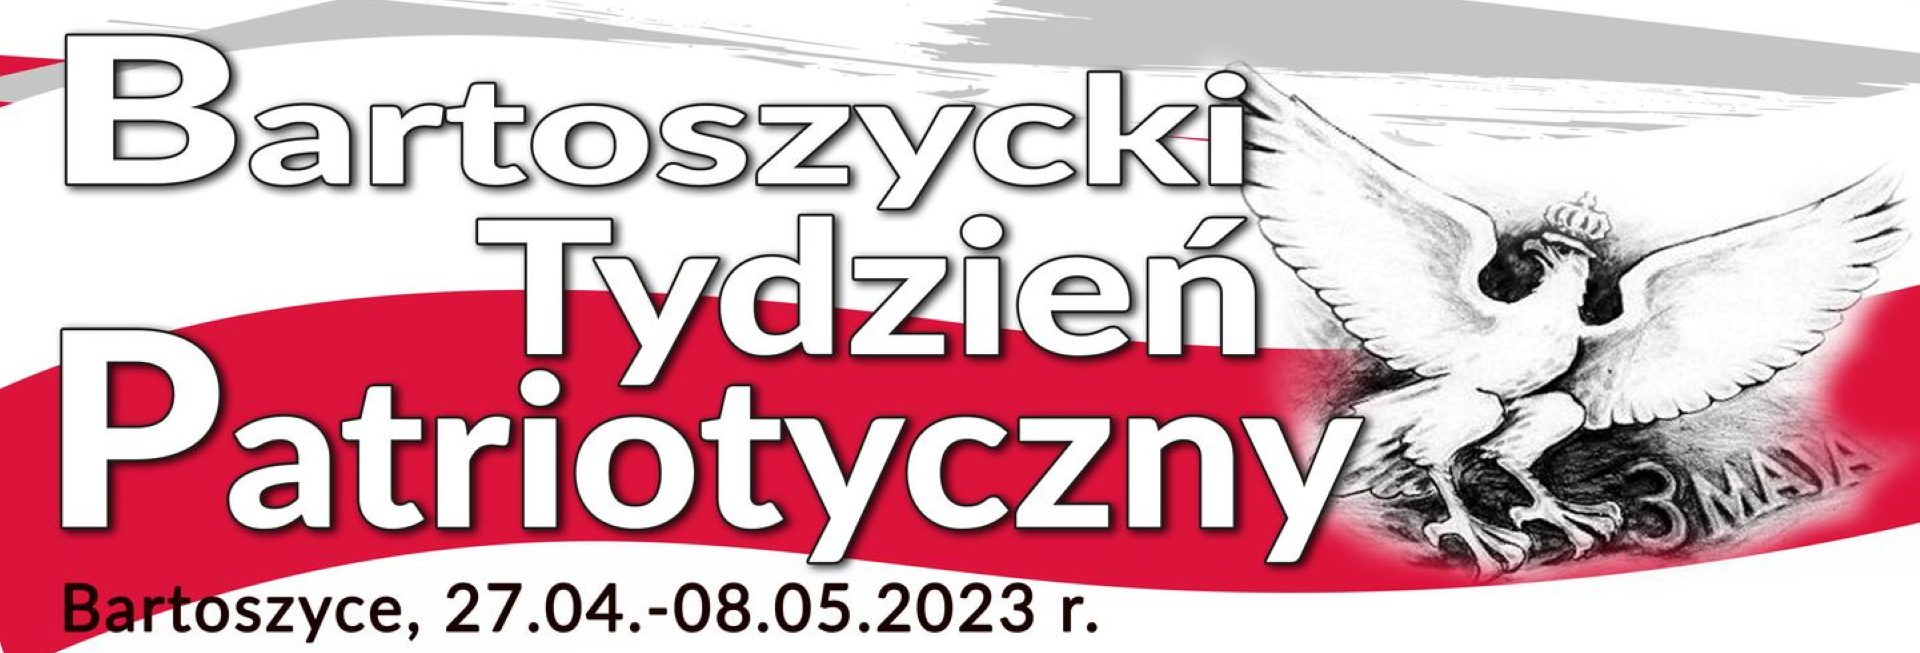 Plakat zapraszający w dniach od 27 kwietnia do 8 maja 2023 r. do Bartoszyc na Bartoszycki Tydzień Patriotyczny Bartoszyce 2023.